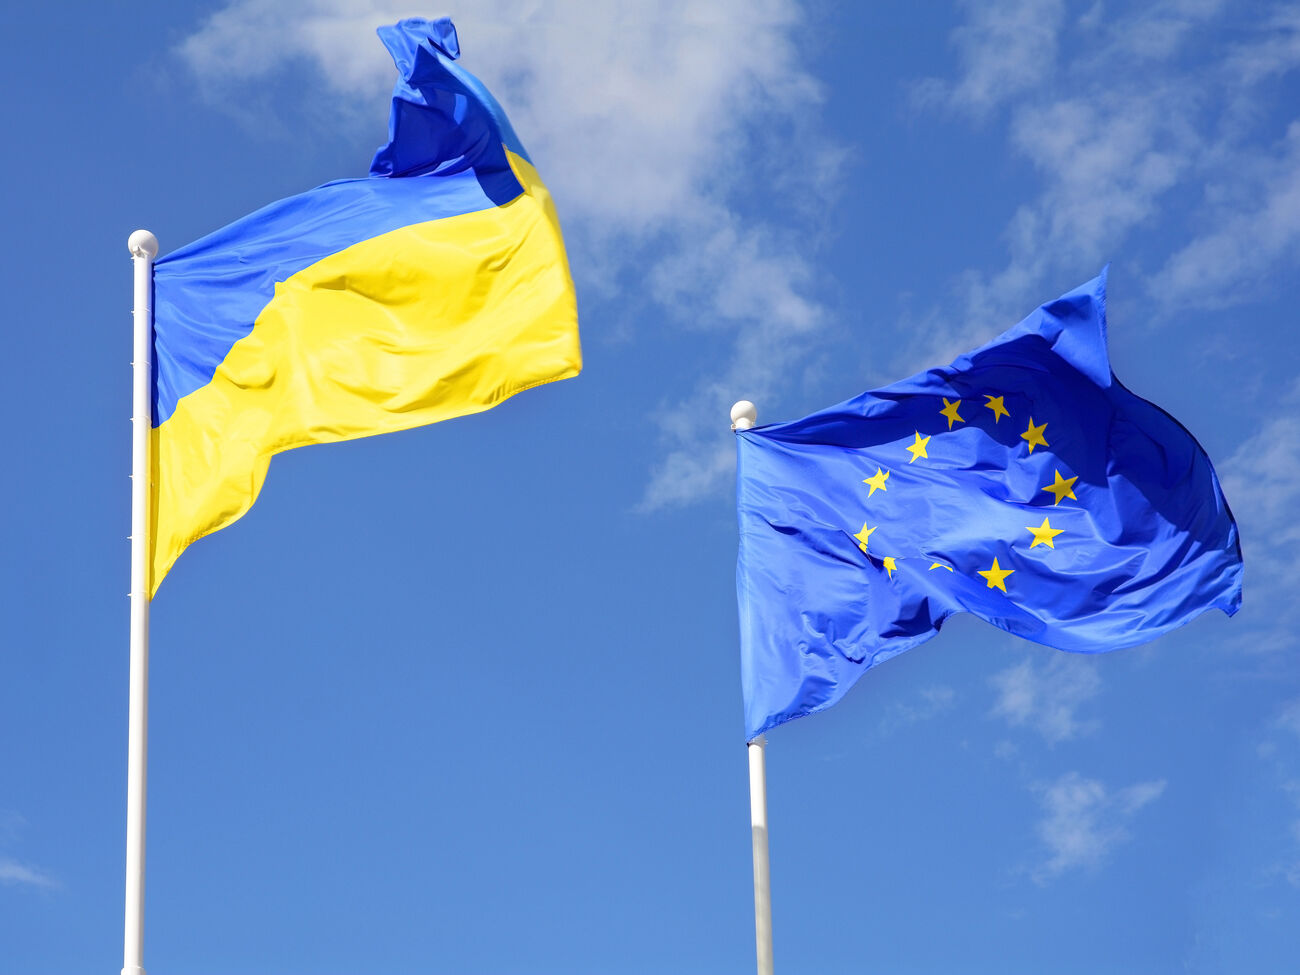 “Не все так пессимистично”. Замглавы ОП Жовква обсудил с премьер-министром Дании поддержку вступления Украины в ЕС